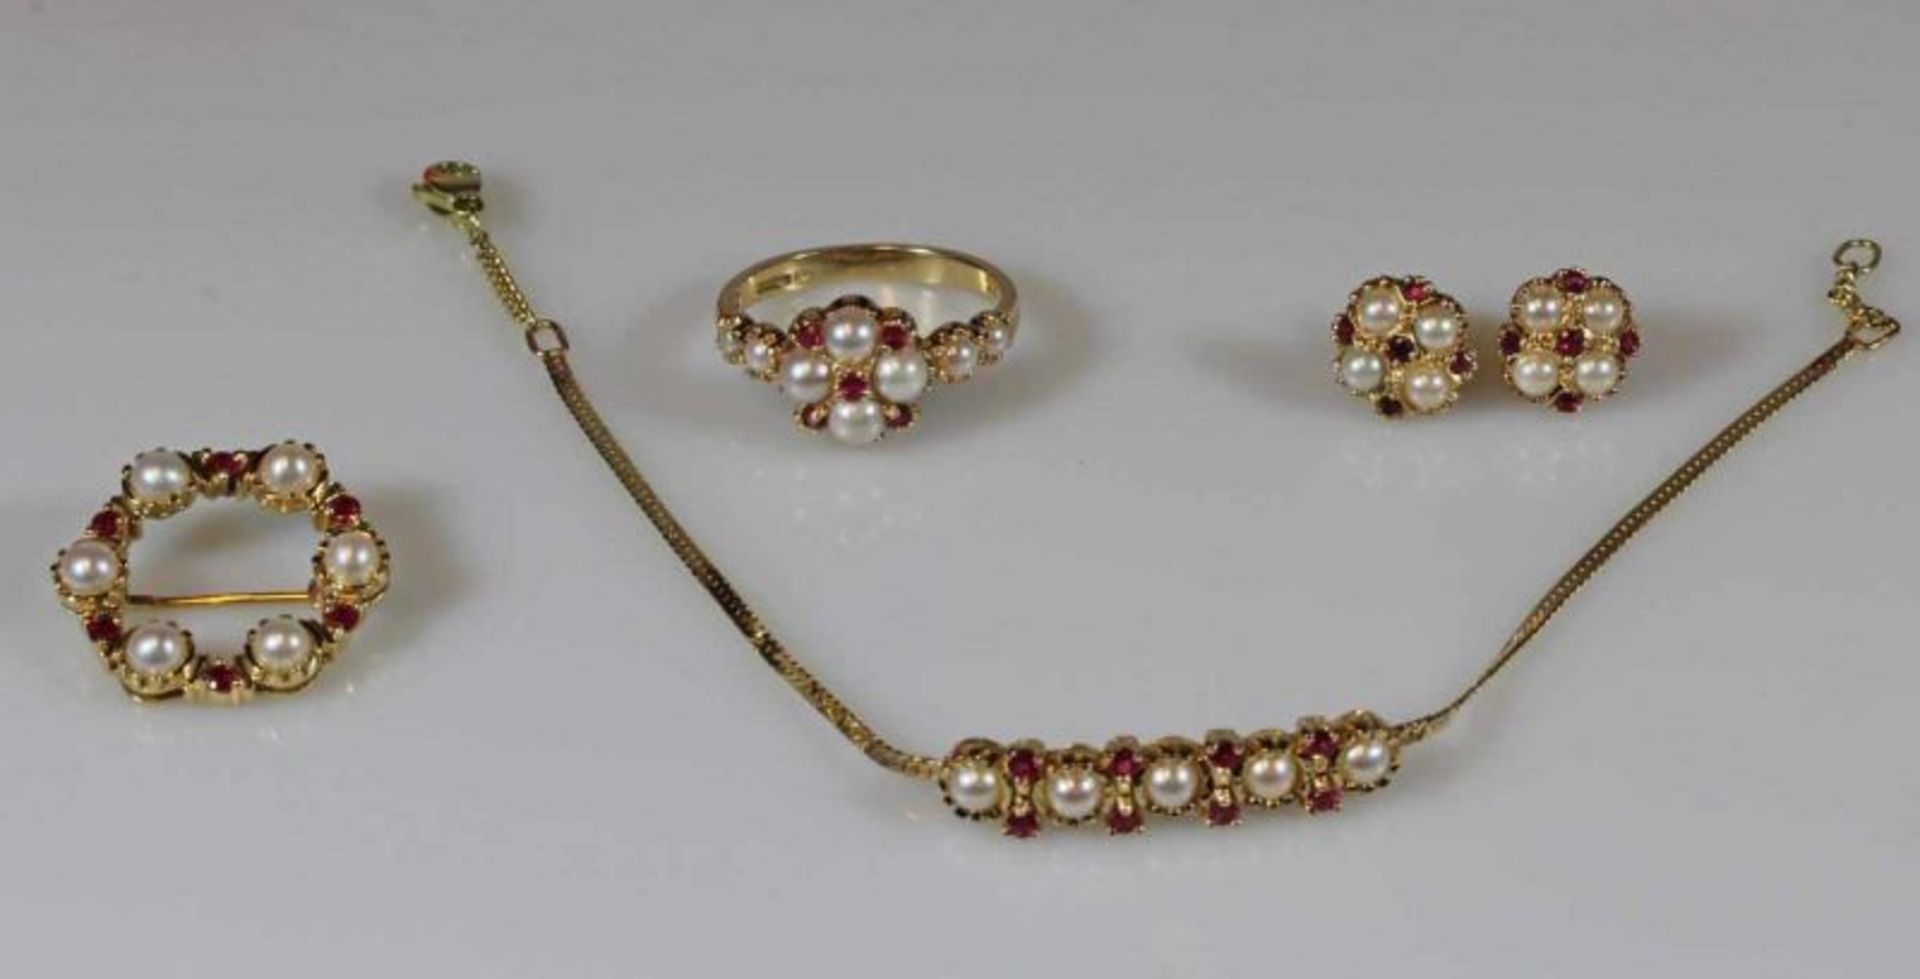 Schmuckset: Armband, Brosche, Paar Ohrstecker, Ring, GG 585, Perlchen und kleine Rubine, zus. 16